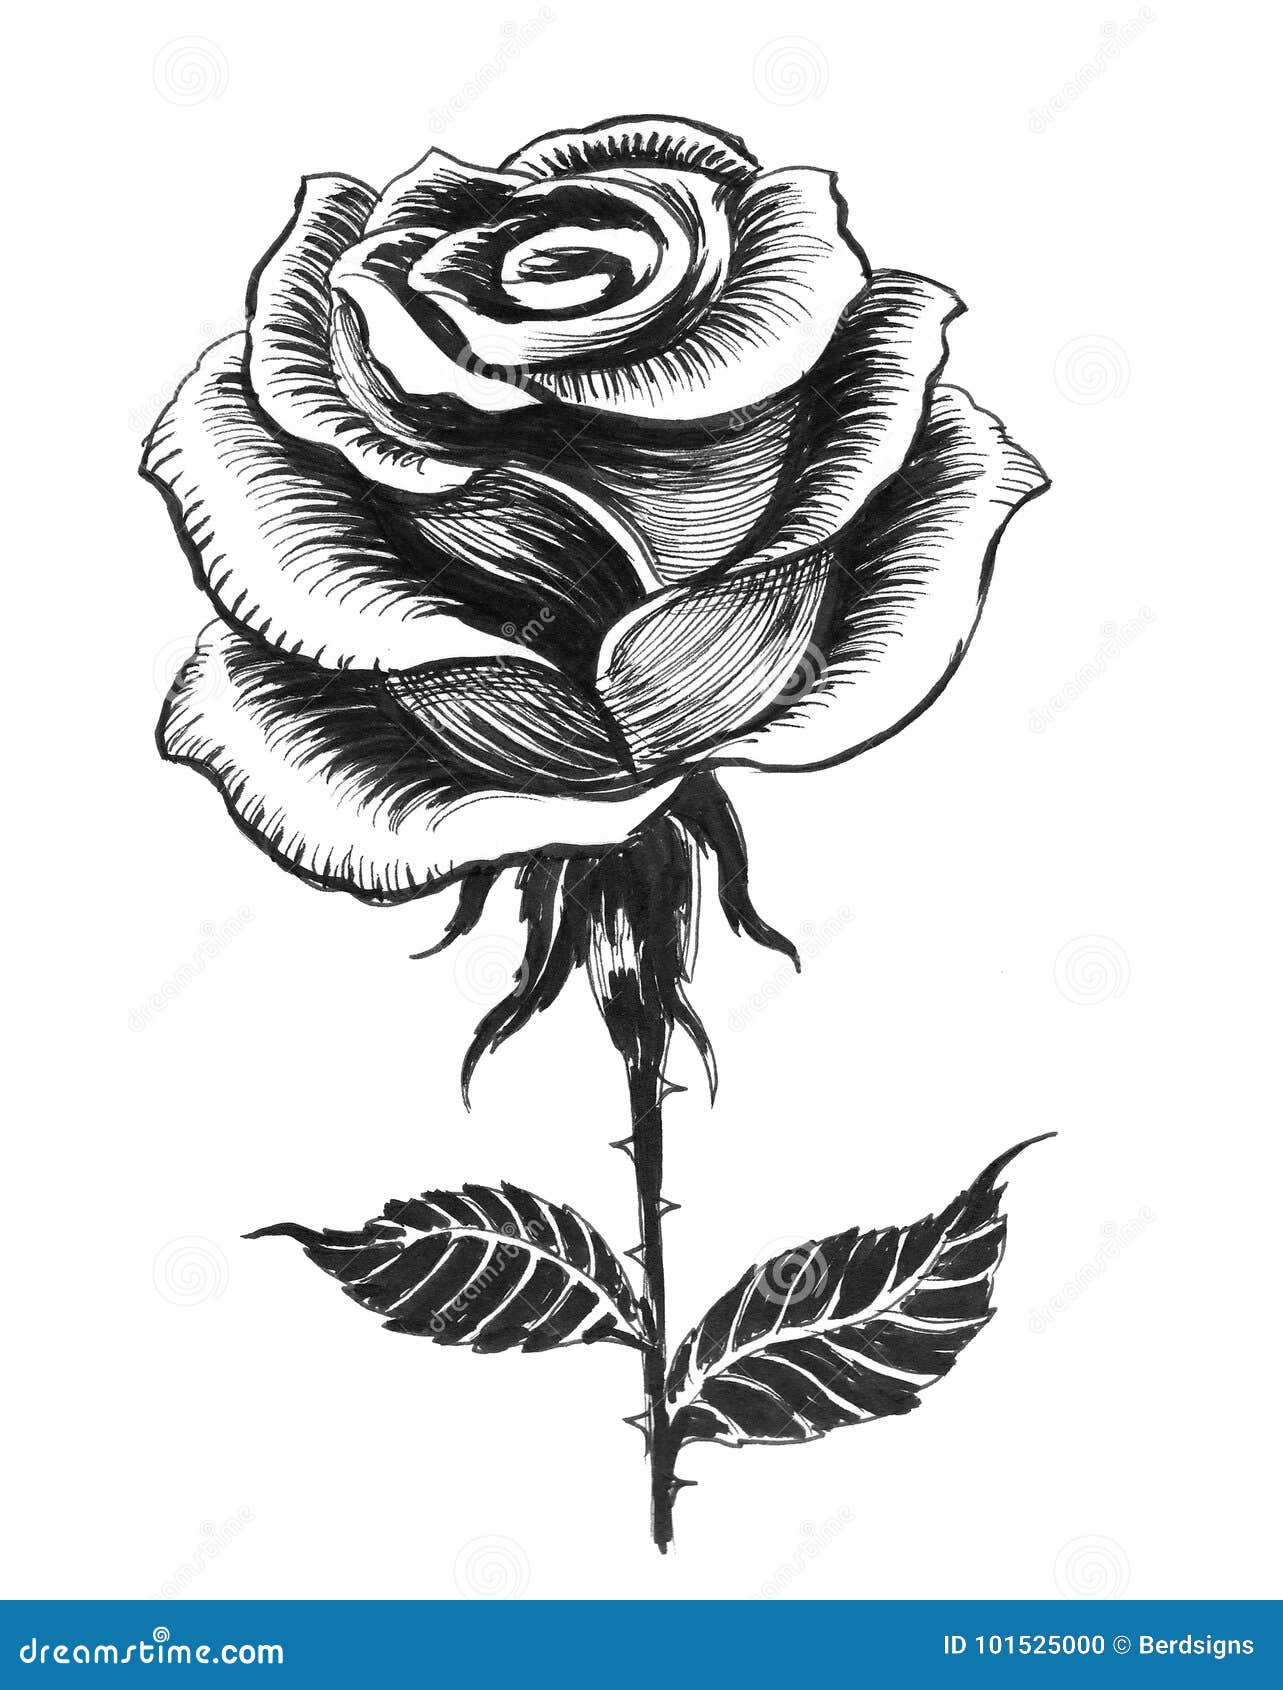 Ink rose stock illustration. Illustration of black, drawing ...